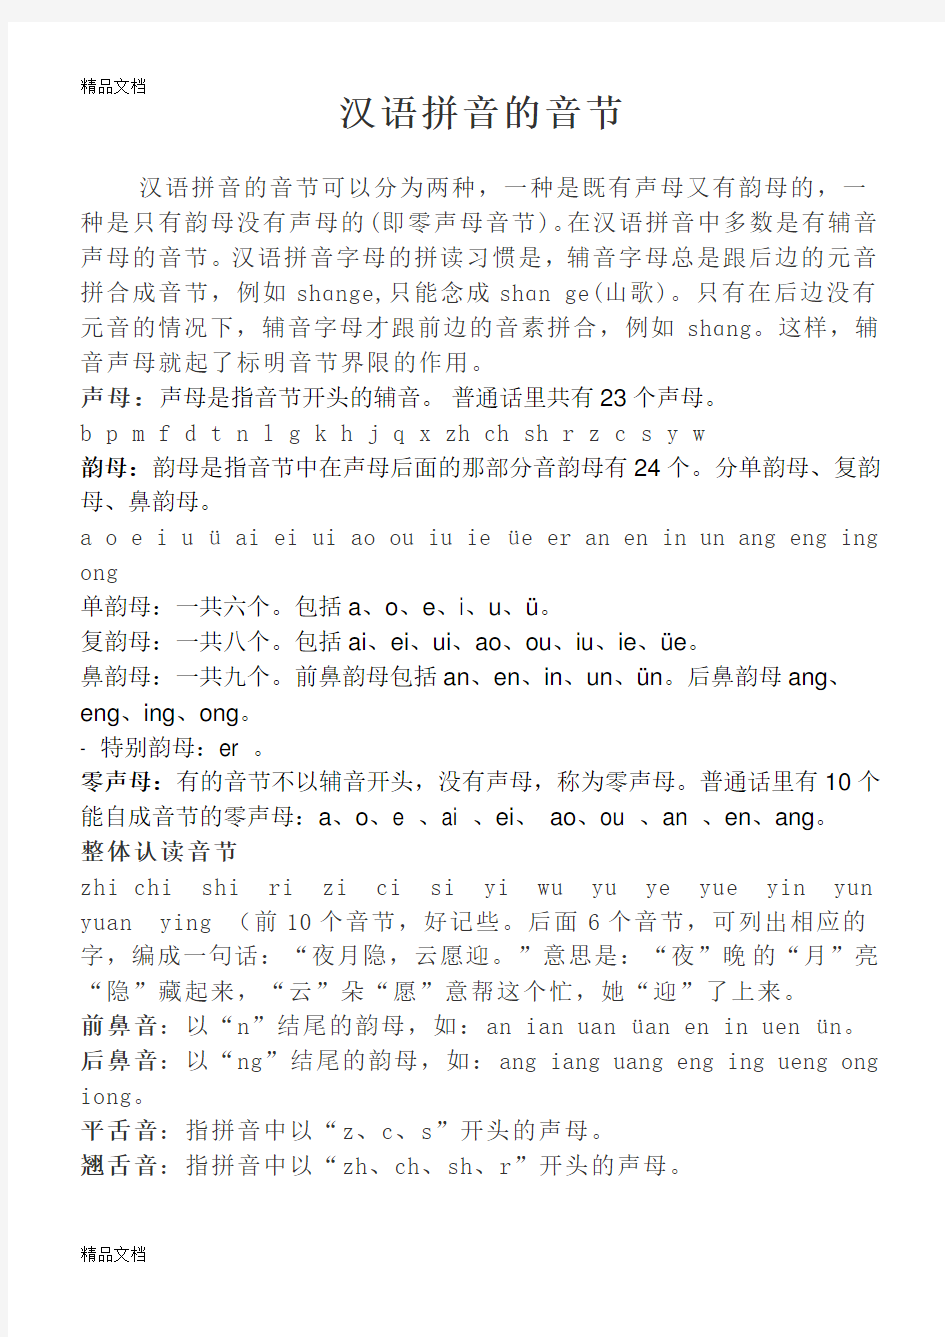 汉语拼音的音节拼写规则总结学习资料